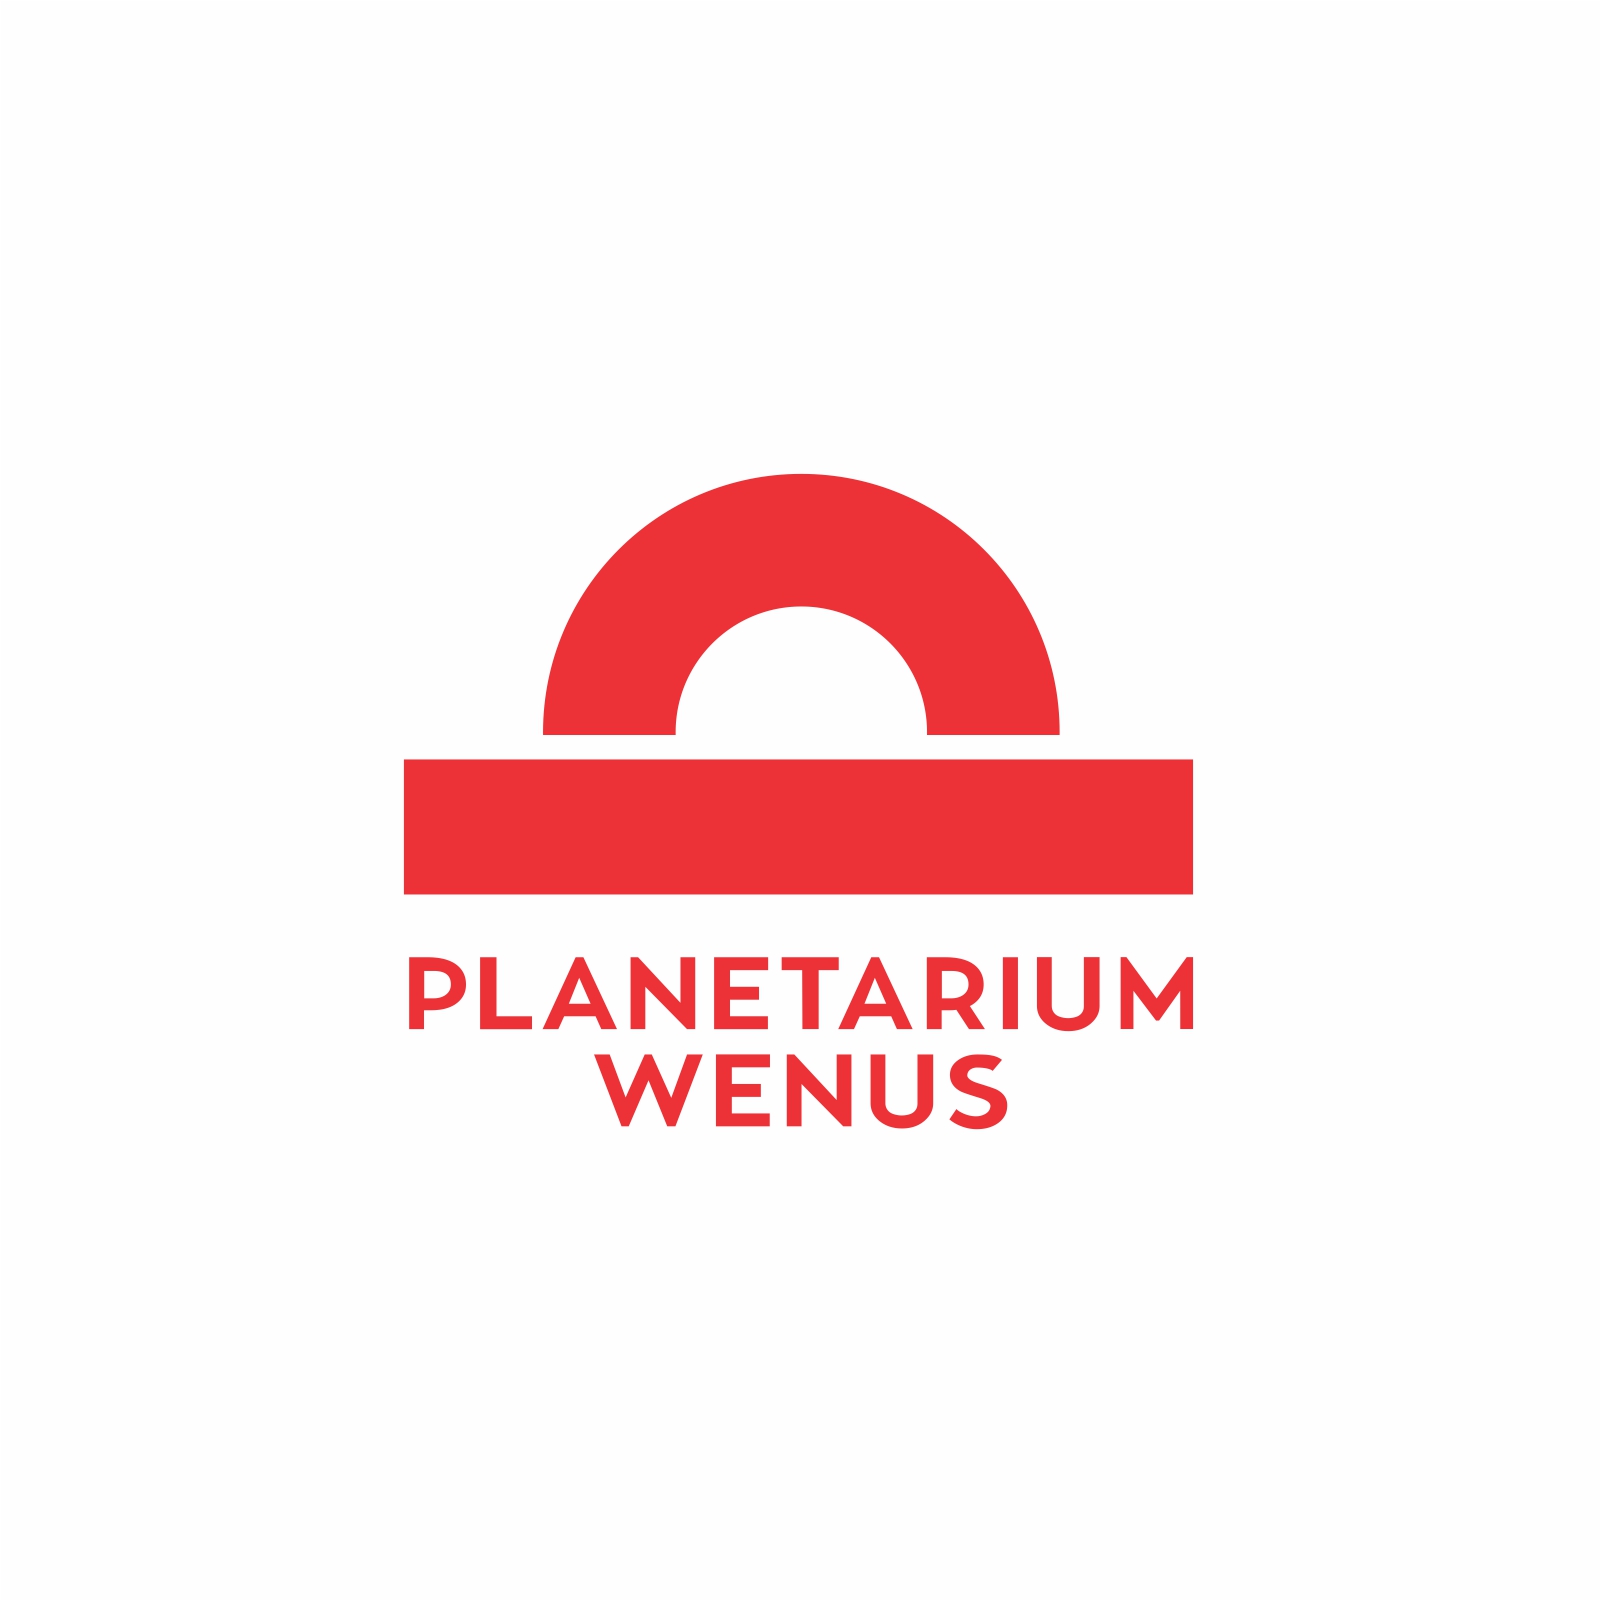 planetarium wenus_biale tlo.jpg